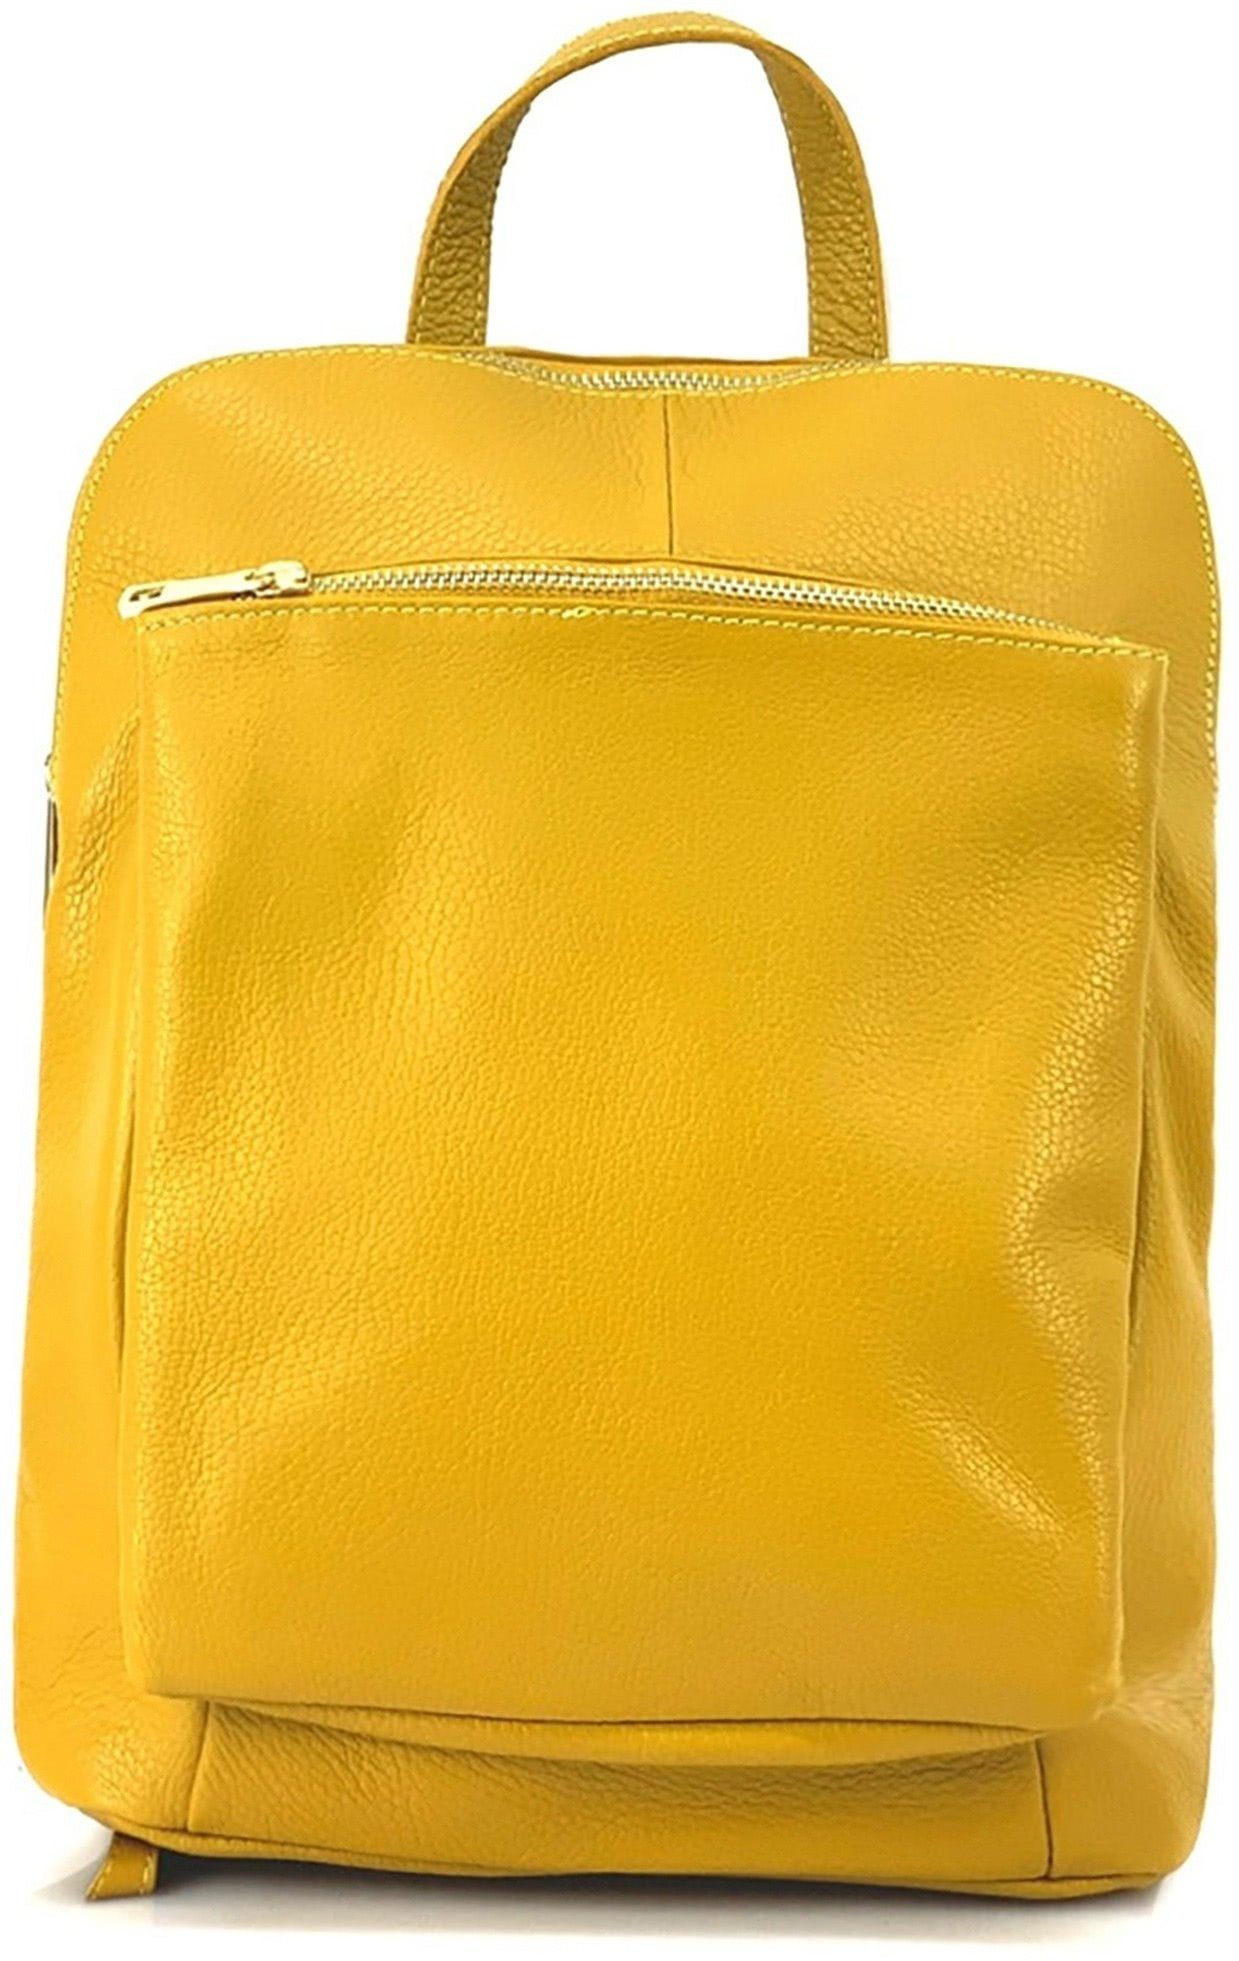 FLORENCE Cityrucksack Florence Damen Rucksack Echtleder (Cityrucksack, Cityrucksack), Damen Tasche Echtleder gelb, Made-In Italy